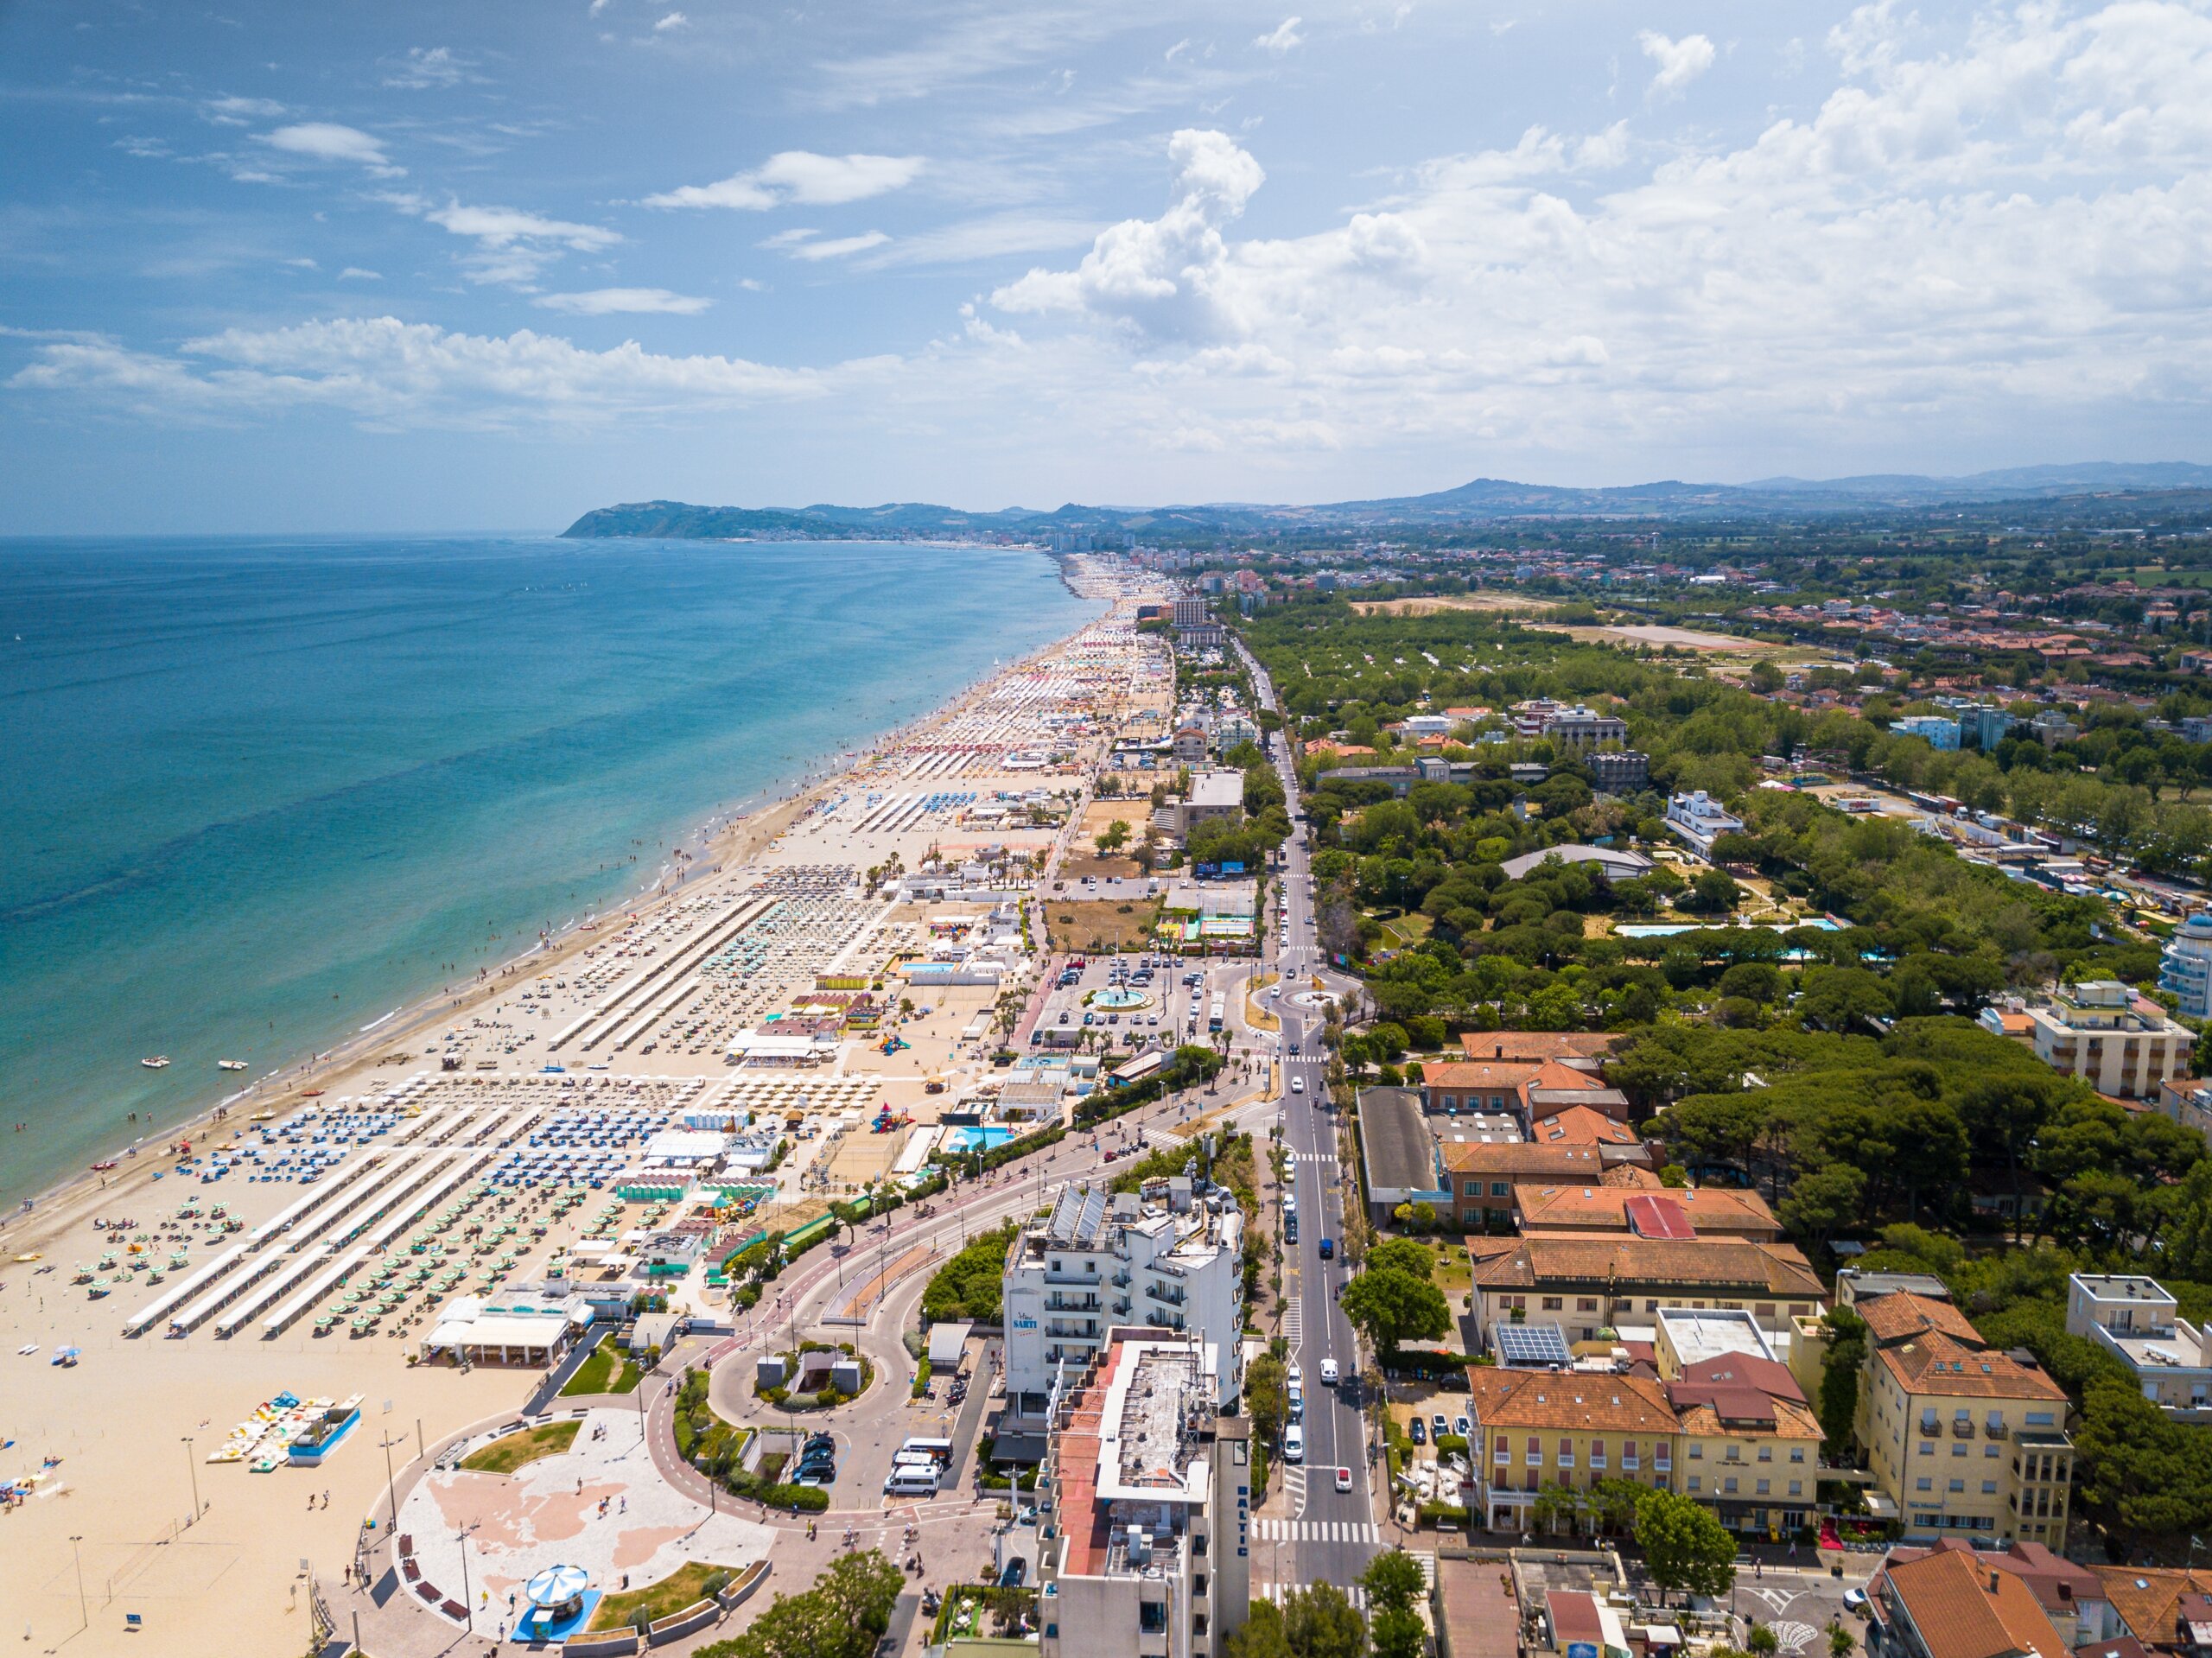 Widok z lotu ptaka na wybrzeże Romanii z plażami w Riccione, Rimini i Cattolica, licencja: shutterstock/By Wirestock Creators